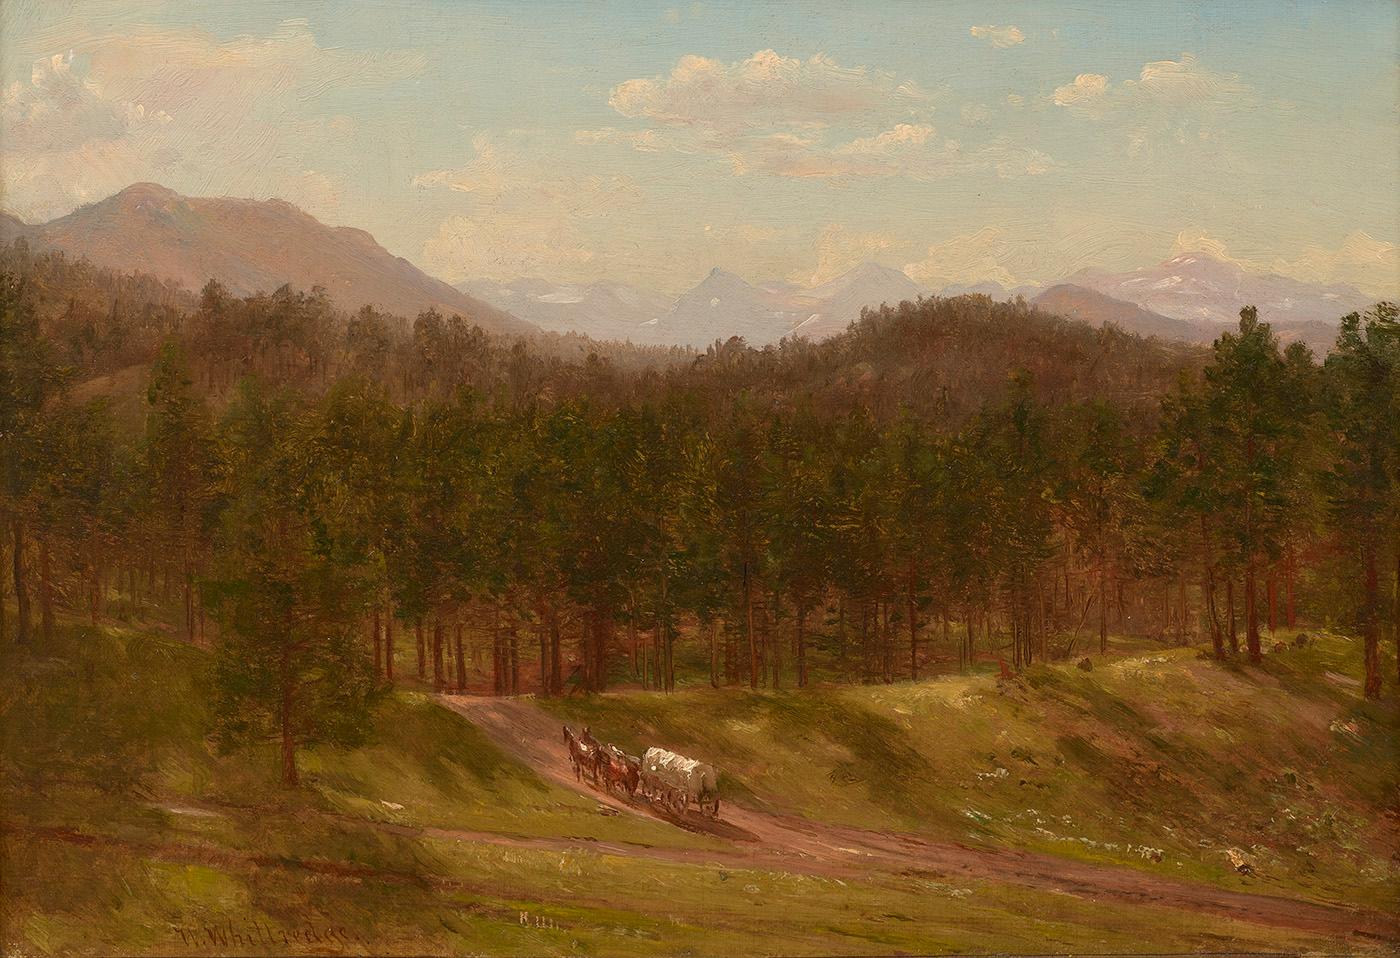 Thomas Worthington Whittredge Landscape Painting - A Mountain Trail, Colorado, 1868